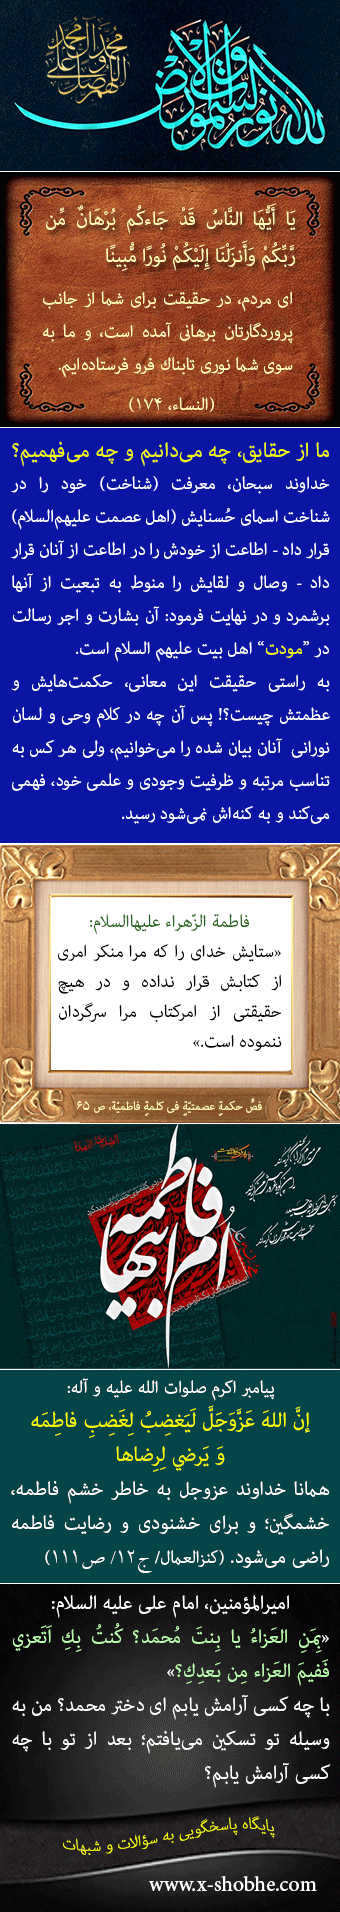 احتراما چرا به حضرت زهرا سلام الله‌علیها "امّ ابیها" گفته می‌شود؟ آیا در روایات علت آن بیان شده است؟